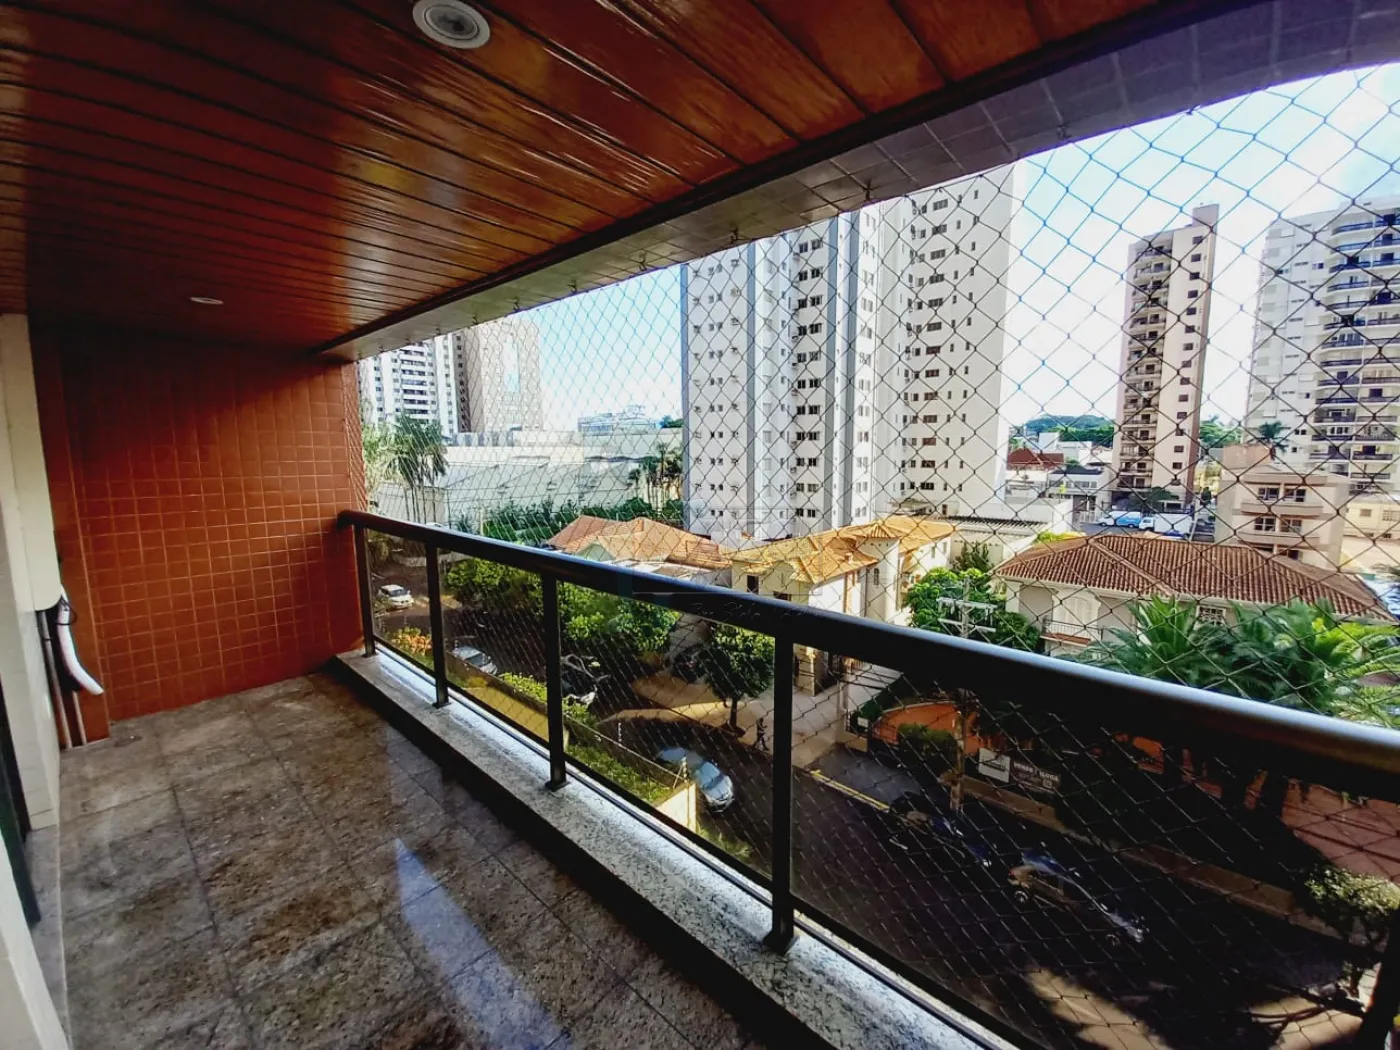 Alugar Apartamentos / Padrão em Ribeirão Preto R$ 2.500,00 - Foto 12